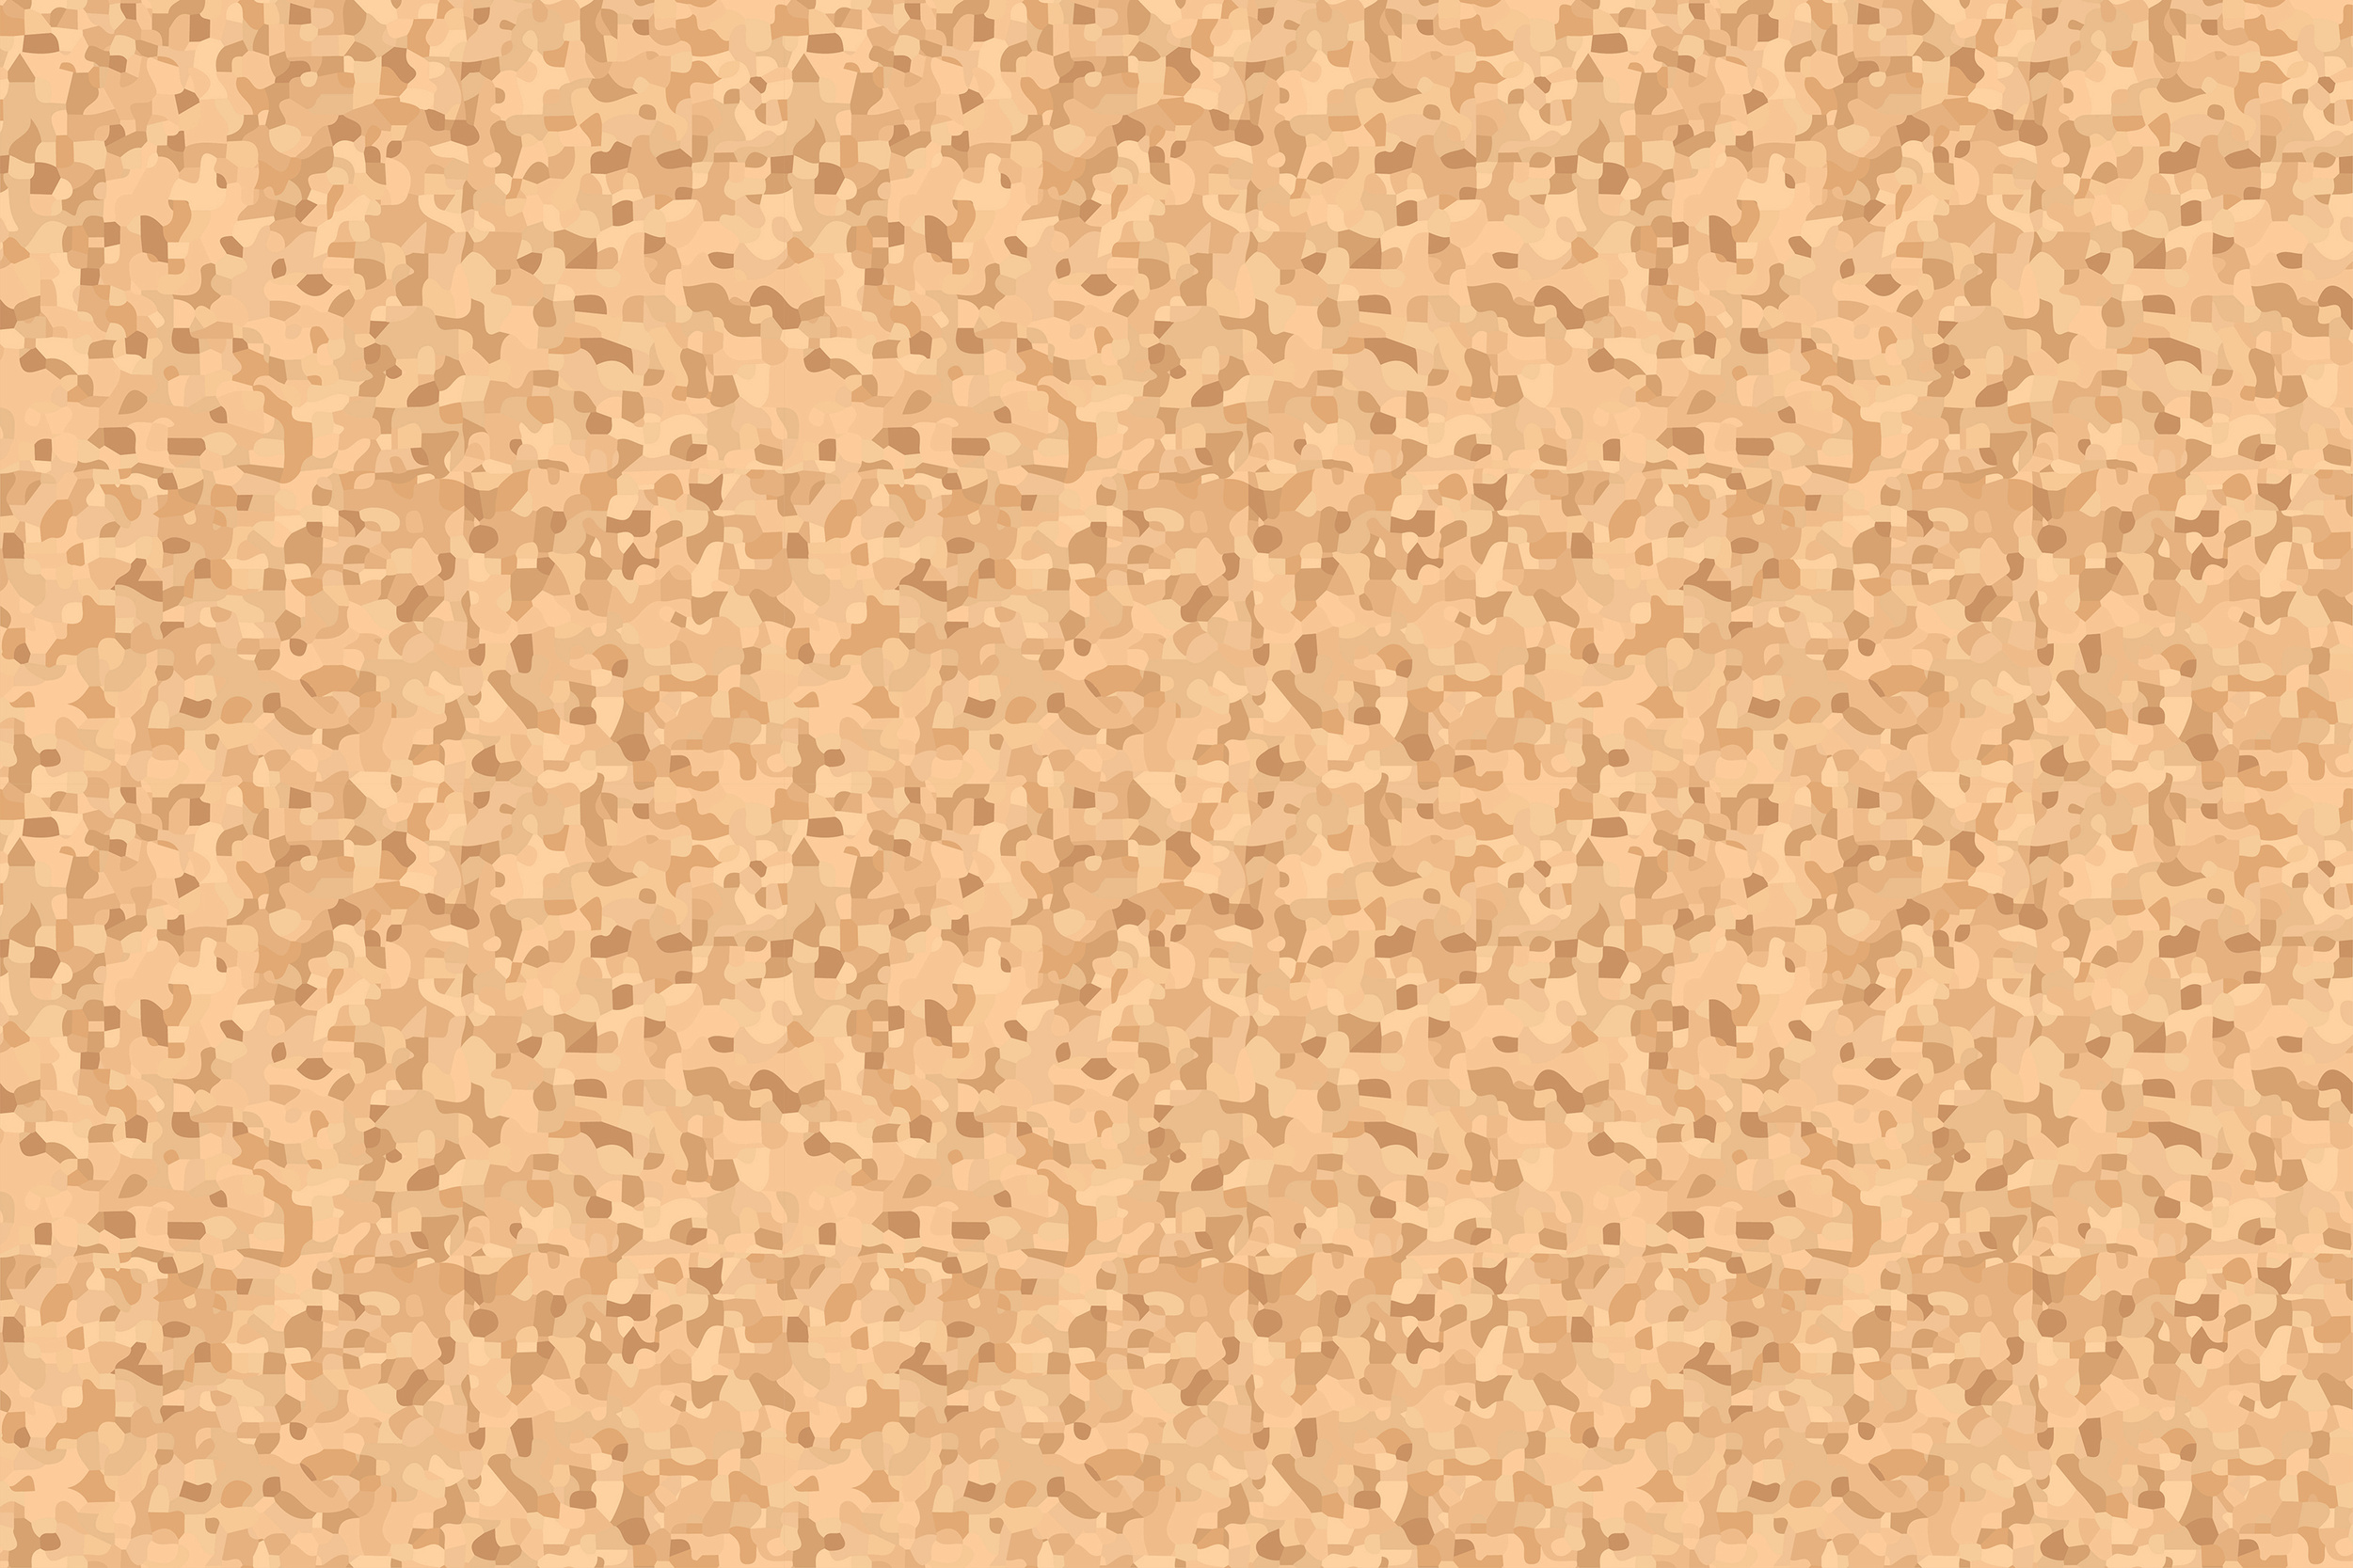 Beige rough cork board texture pattern background